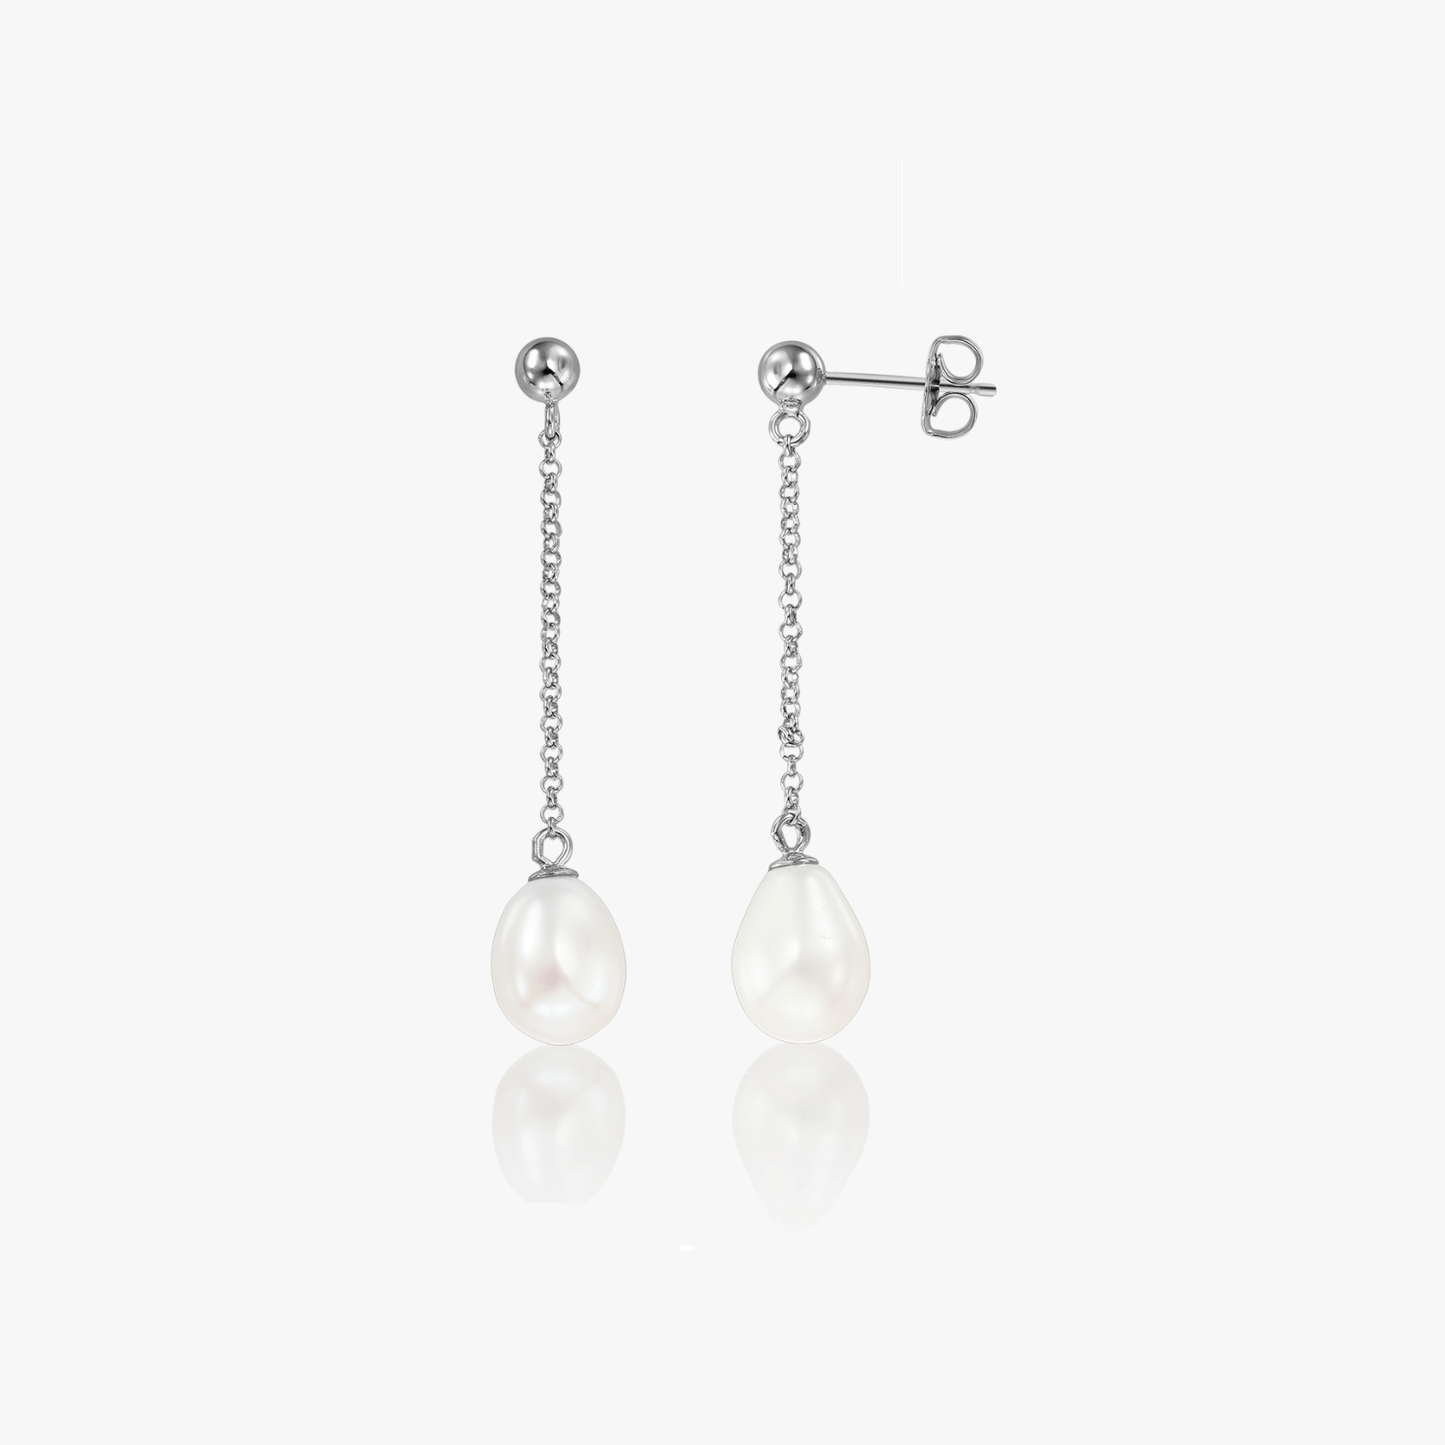 Khloe Silver Earrings - Natural Pearls